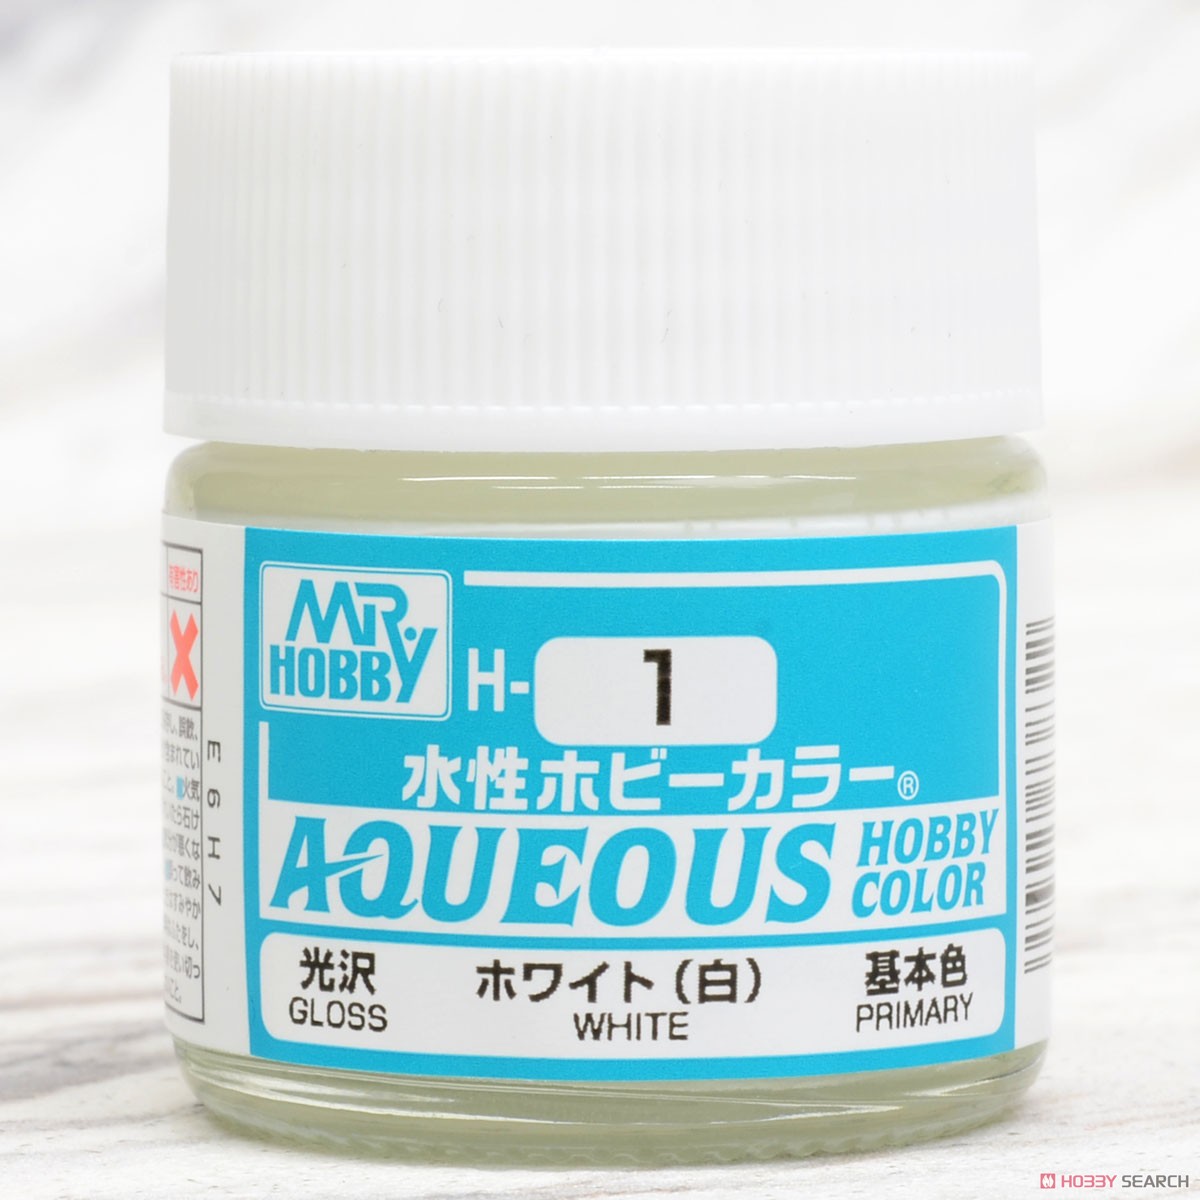 Aqueous Hobby Color - H1 Gloss White (Primary)